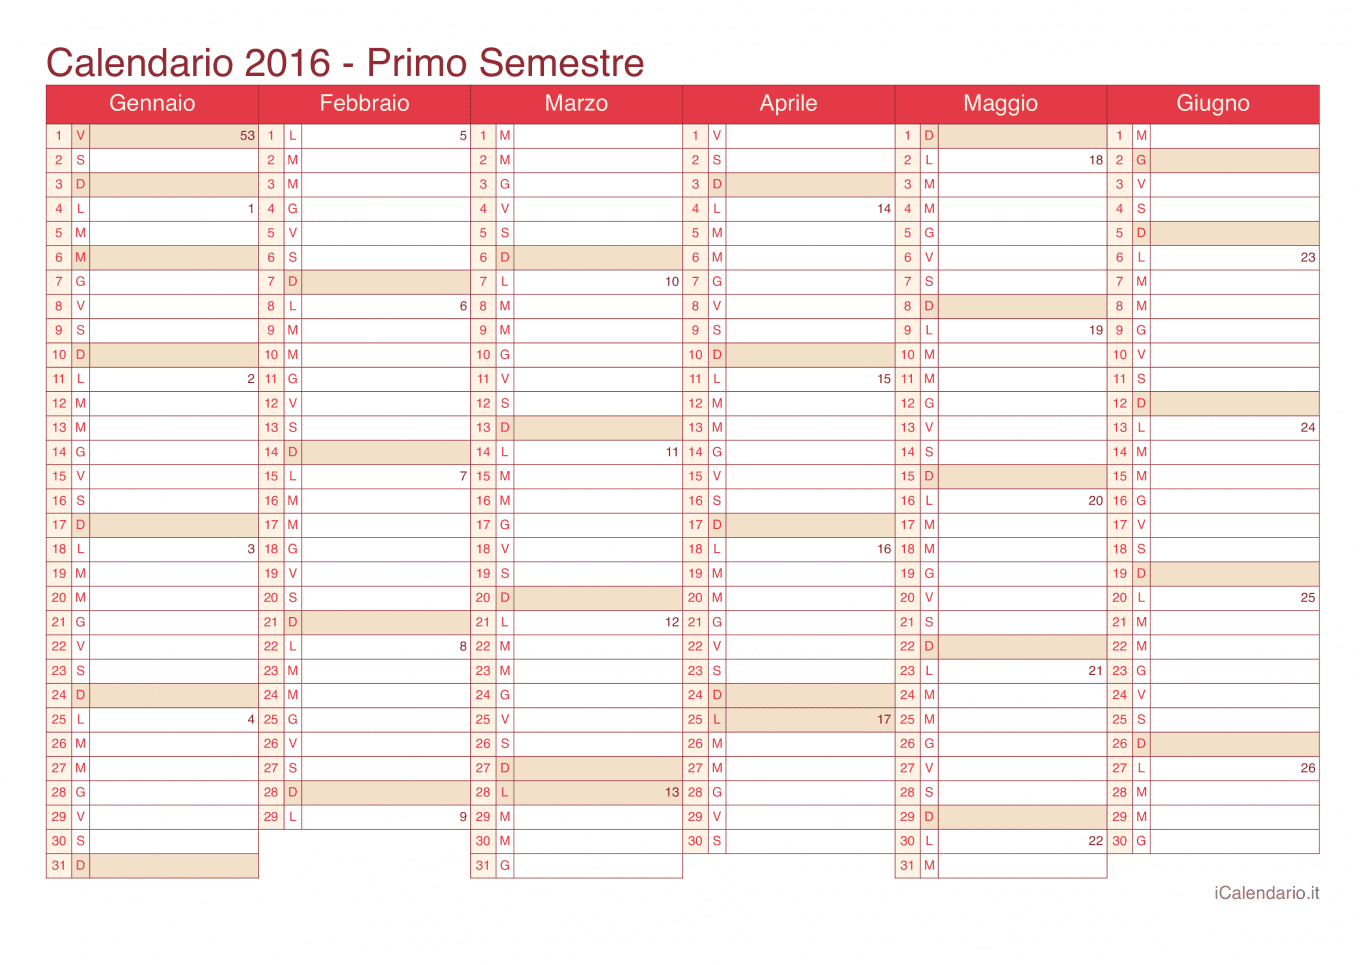 Calendario semestrale con numeri delle settimane 2016 - Cherry